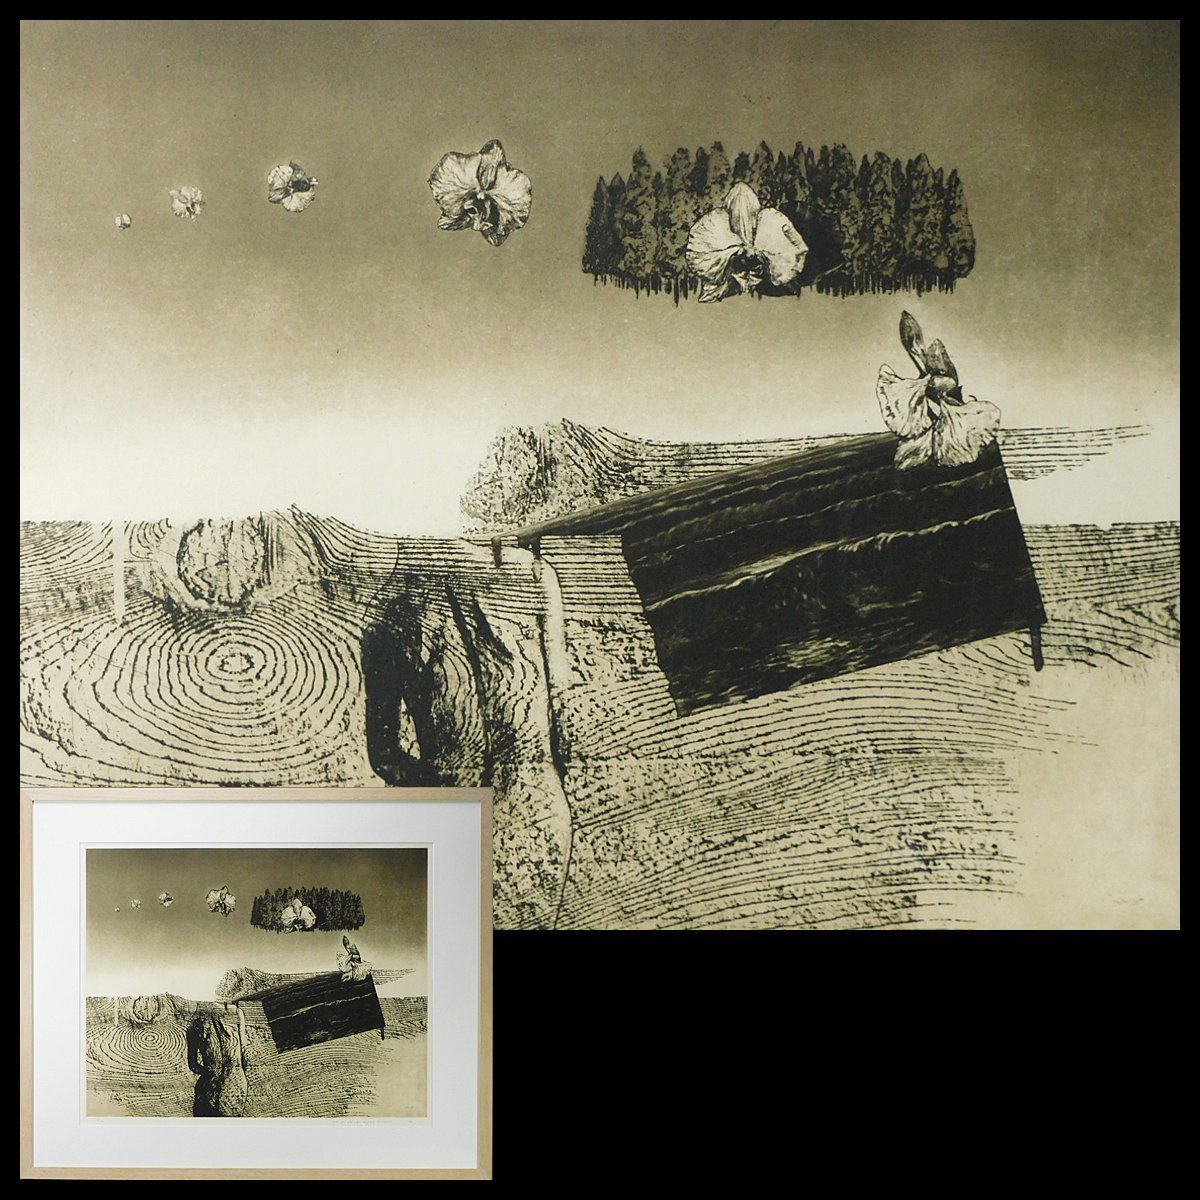 中林忠良 剥離される風景Ⅱ エッチング アクアチント(銅版画)額装 1972